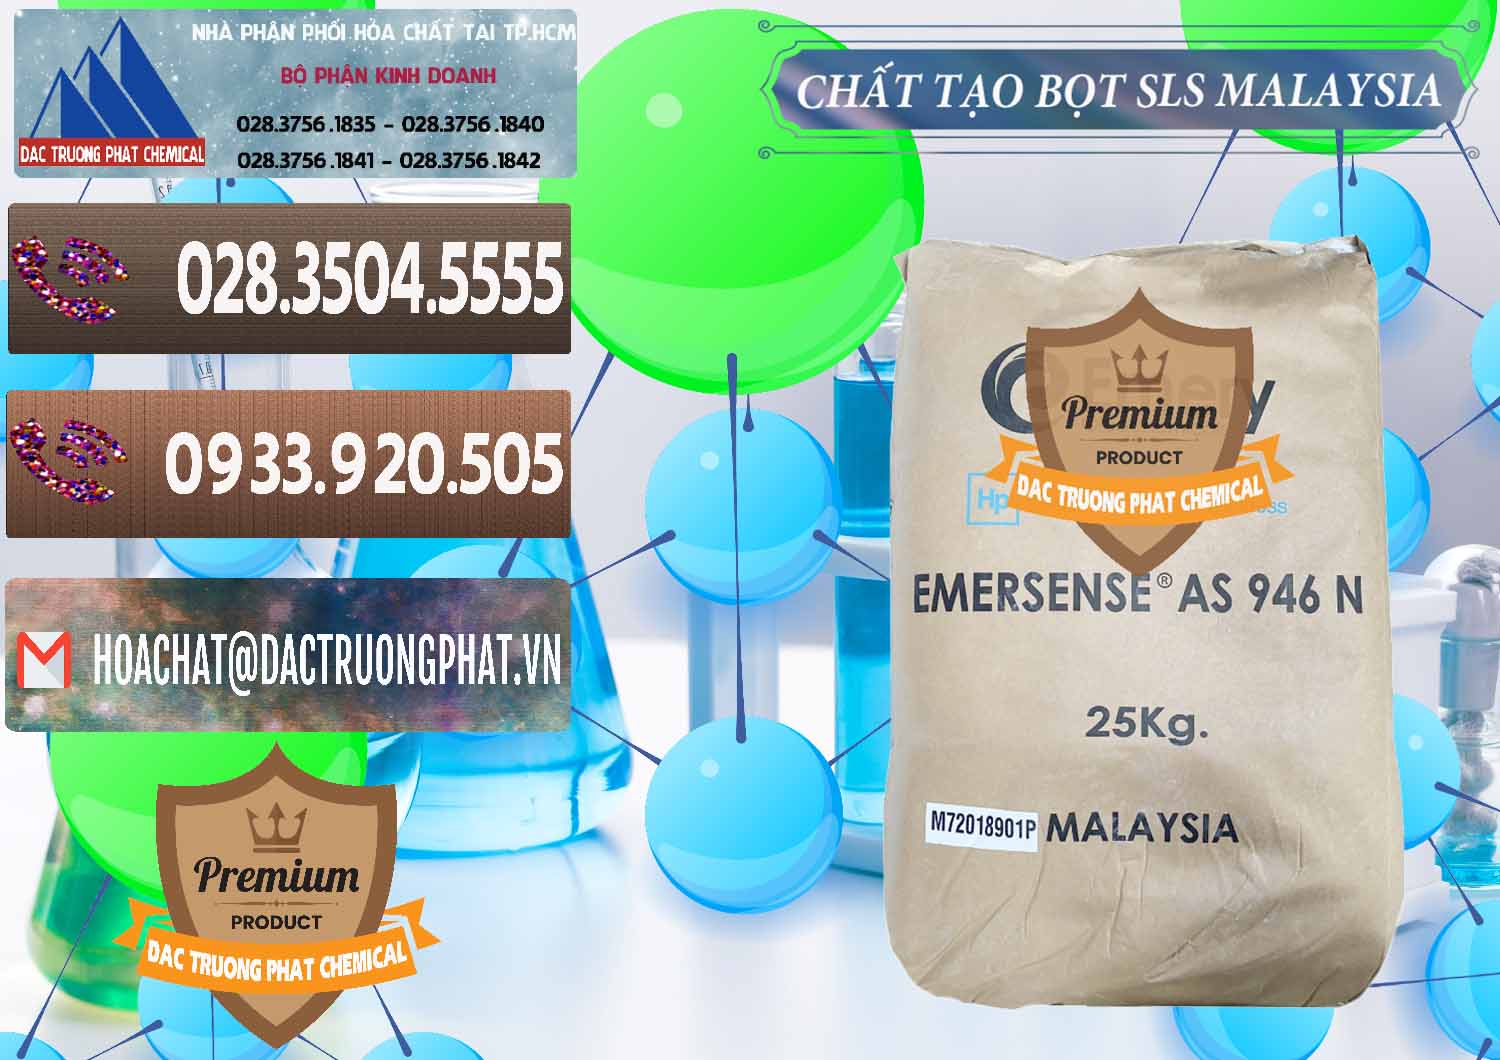 Công ty cung cấp _ bán Chất Tạo Bọt SLS Emery - Emersense AS 946N Mã Lai Malaysia - 0423 - Công ty chuyên cung cấp và bán hóa chất tại TP.HCM - hoachatviet.net